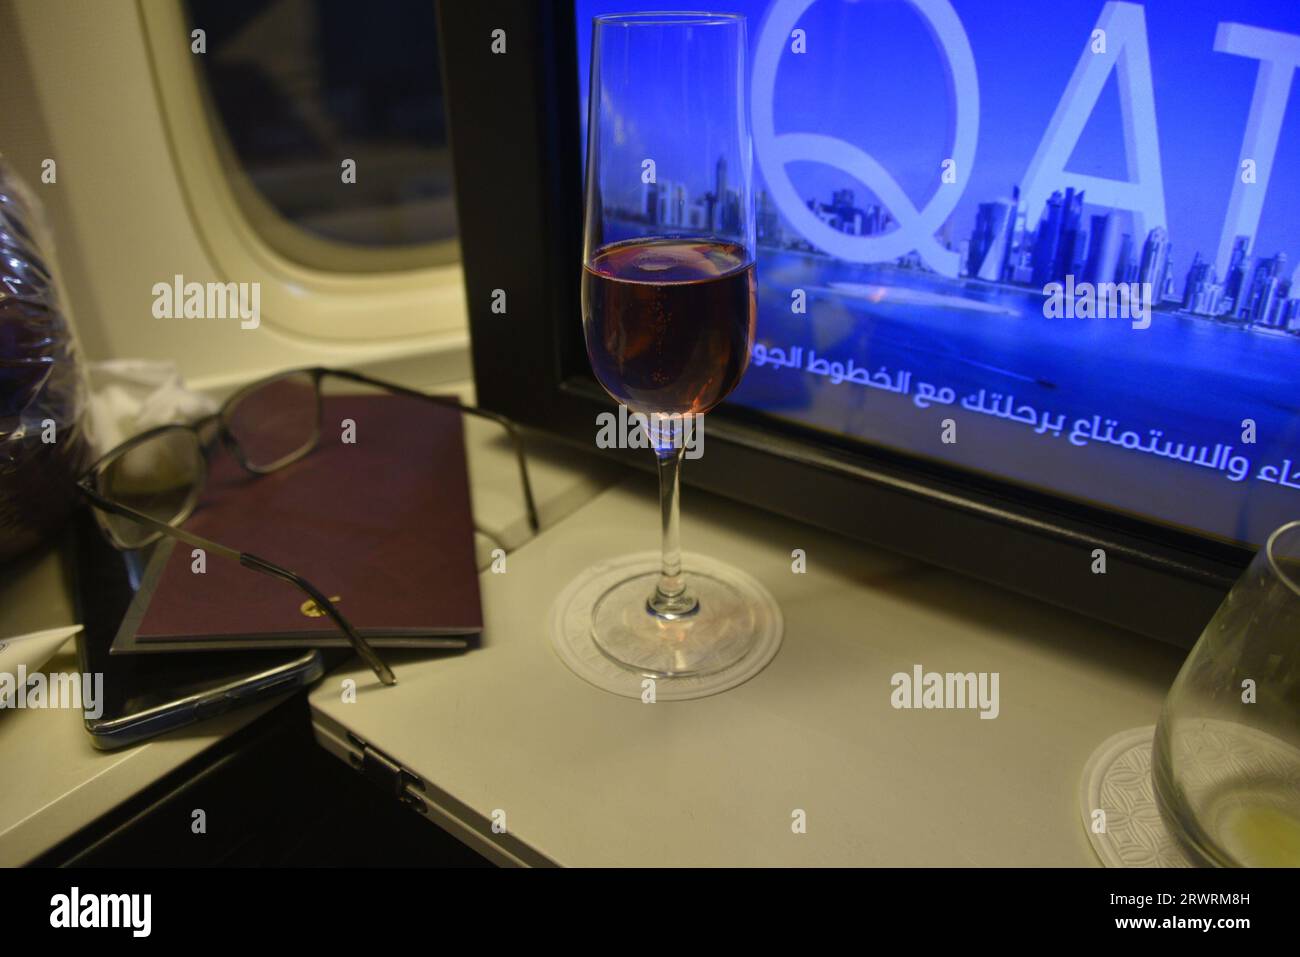 qatar airways, A380 , business bar brandy, drinks spirits, taste of paris,  best airline in world Stock Photo